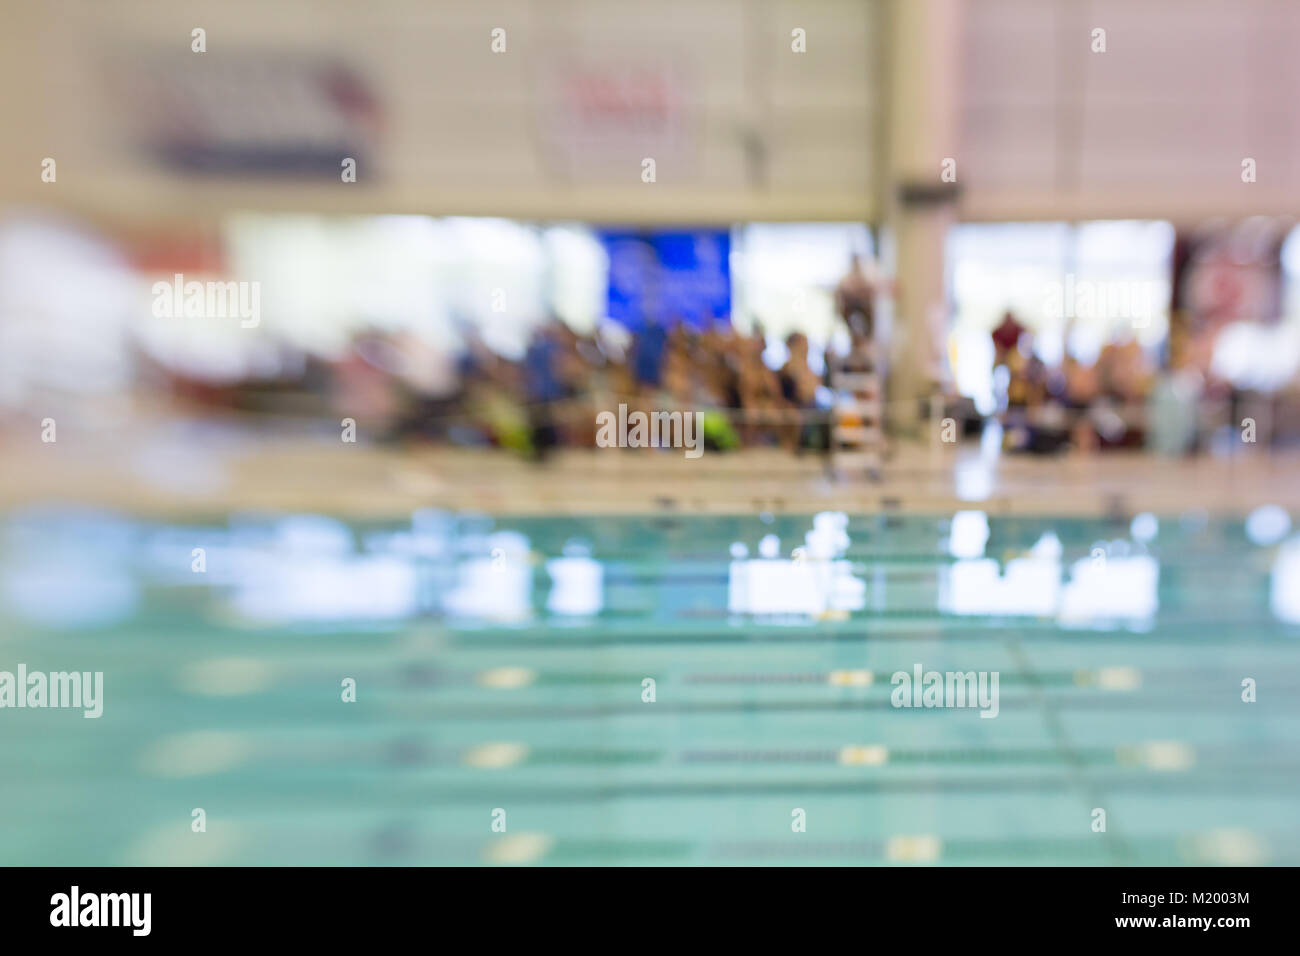 Una vista astratta di persone a una nuotata soddisfare. Immagine sarebbe adatto per un background. Foto Stock